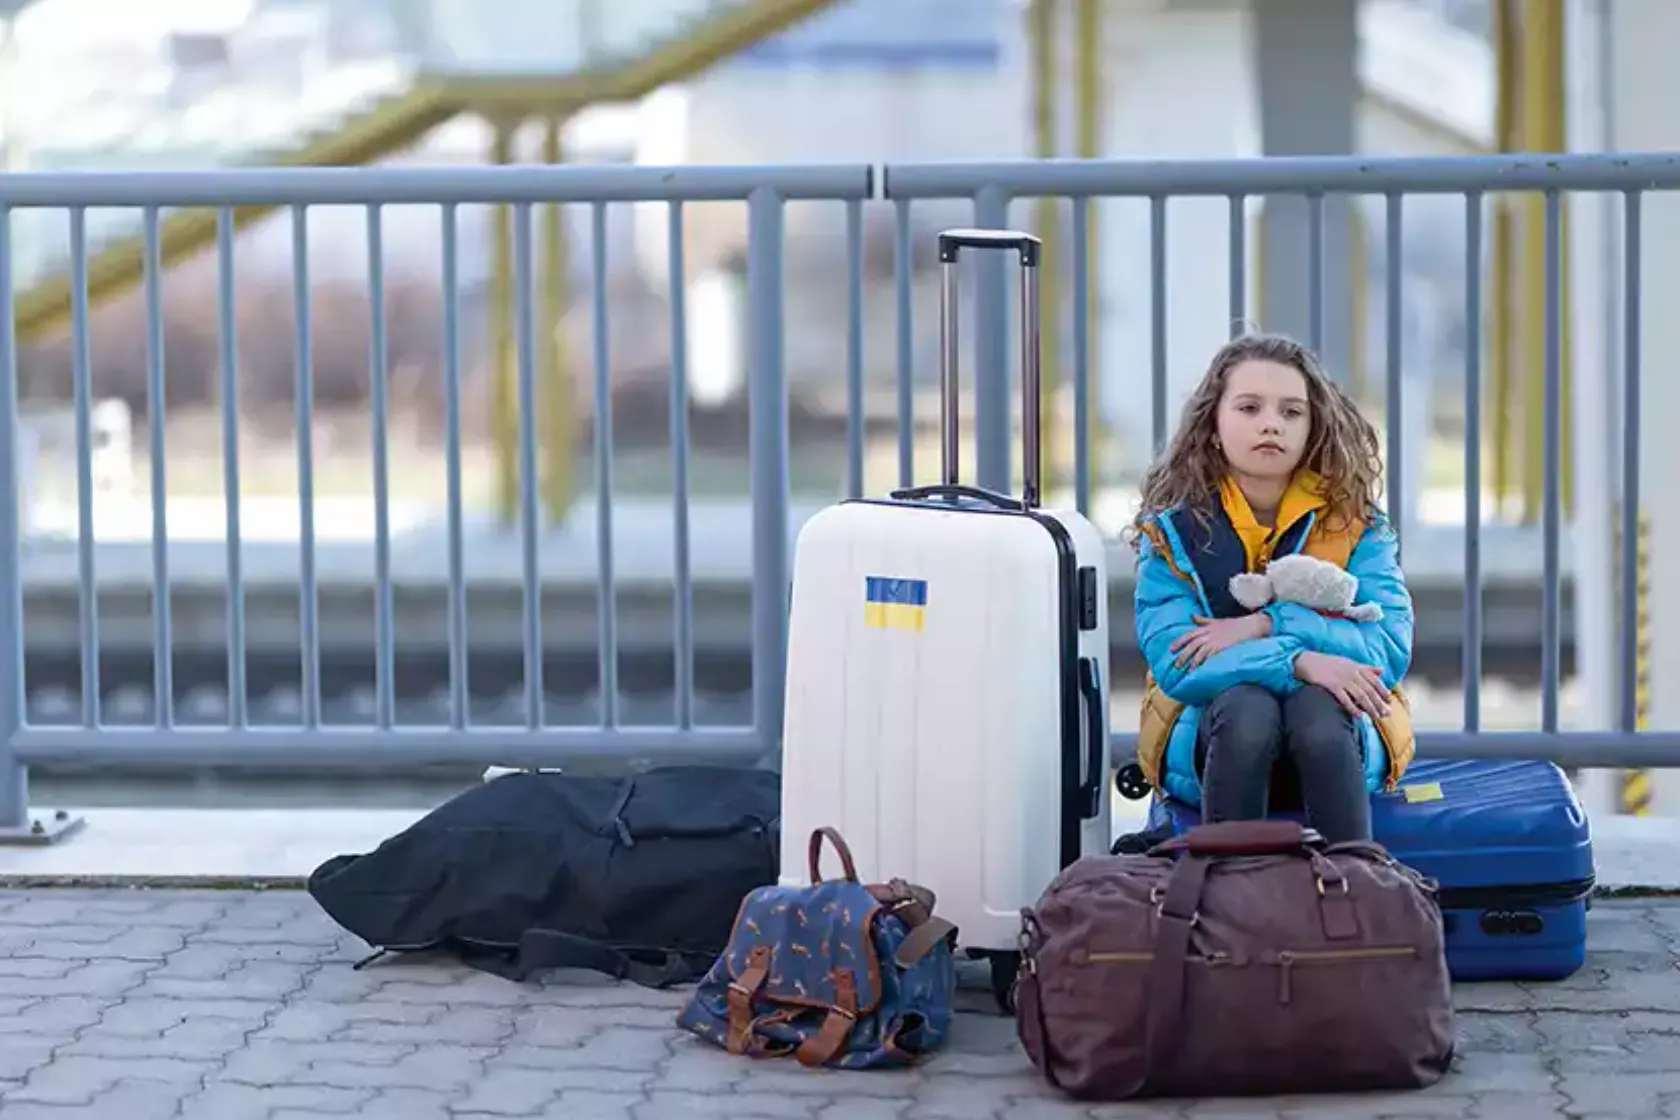 Mädchen in blauer Jacke mit gelbem Schal sitzt mit Gepäck auf dem Boden am Bahnhof.